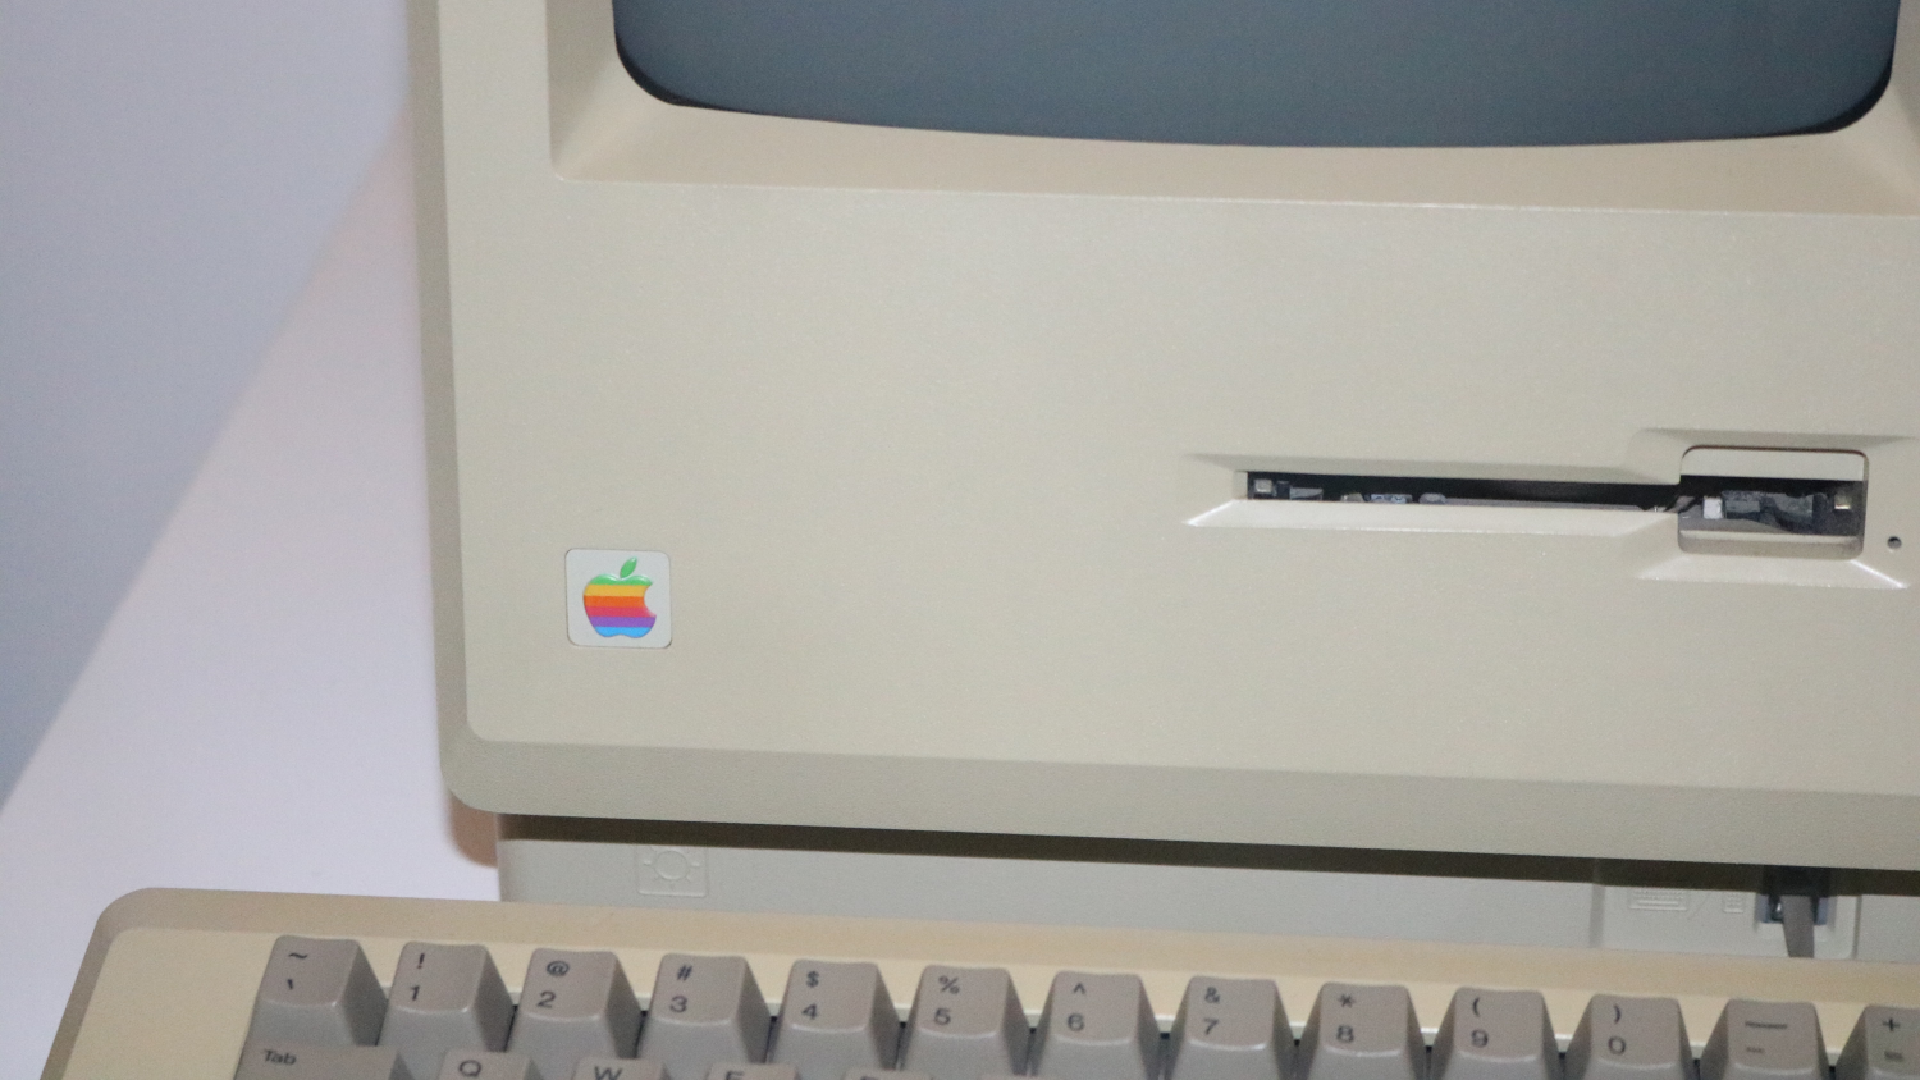 starý počítač značky apple